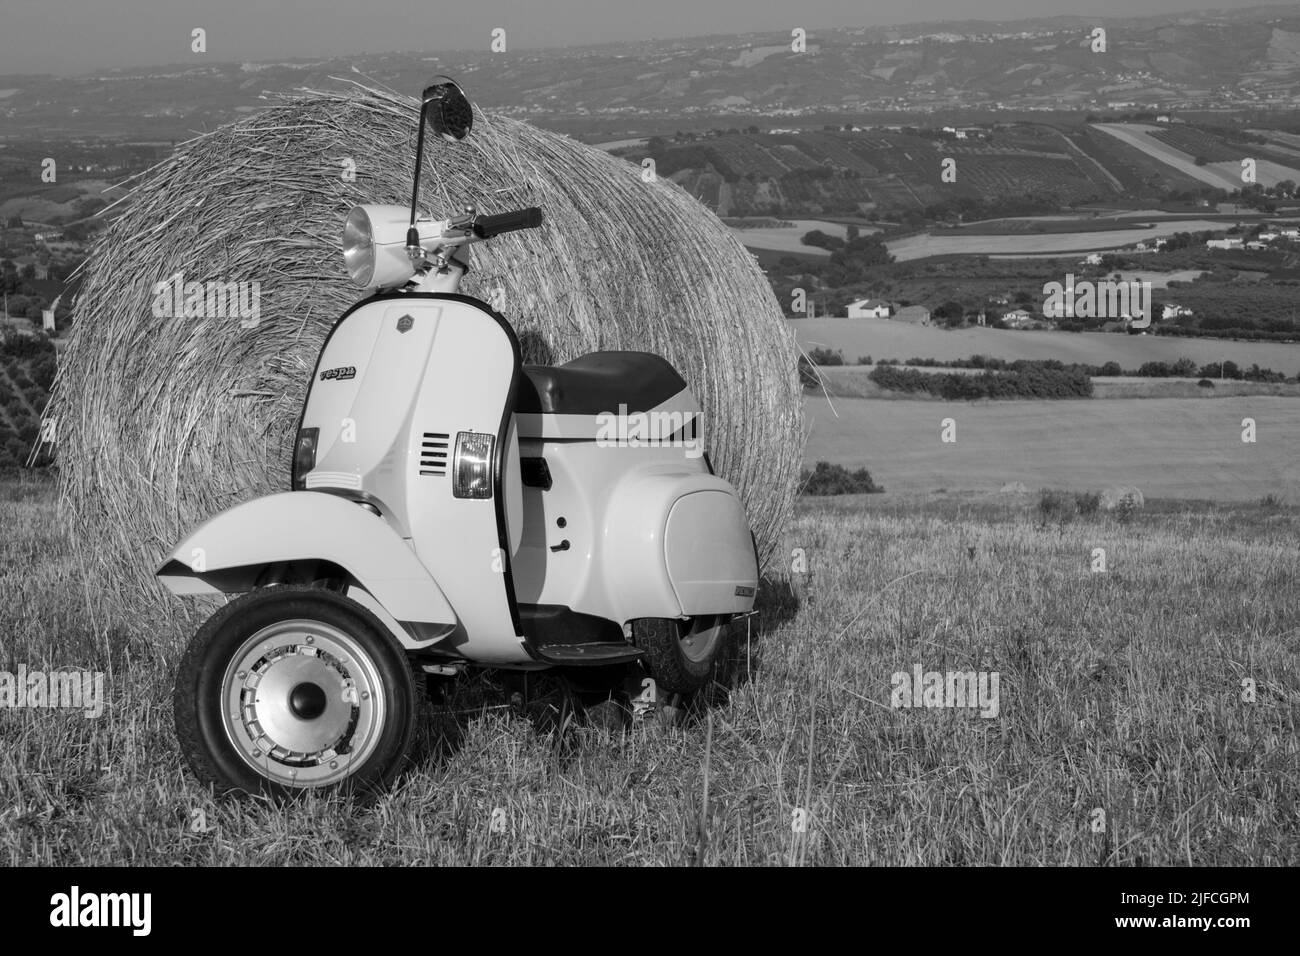 Bild eines alten Piaggio vespa Motorrads, das auf einem Feld mit Strohballen und einer atemberaubenden Aussicht im Hintergrund geparkt ist. Schwarzweißfotos. Stockfoto